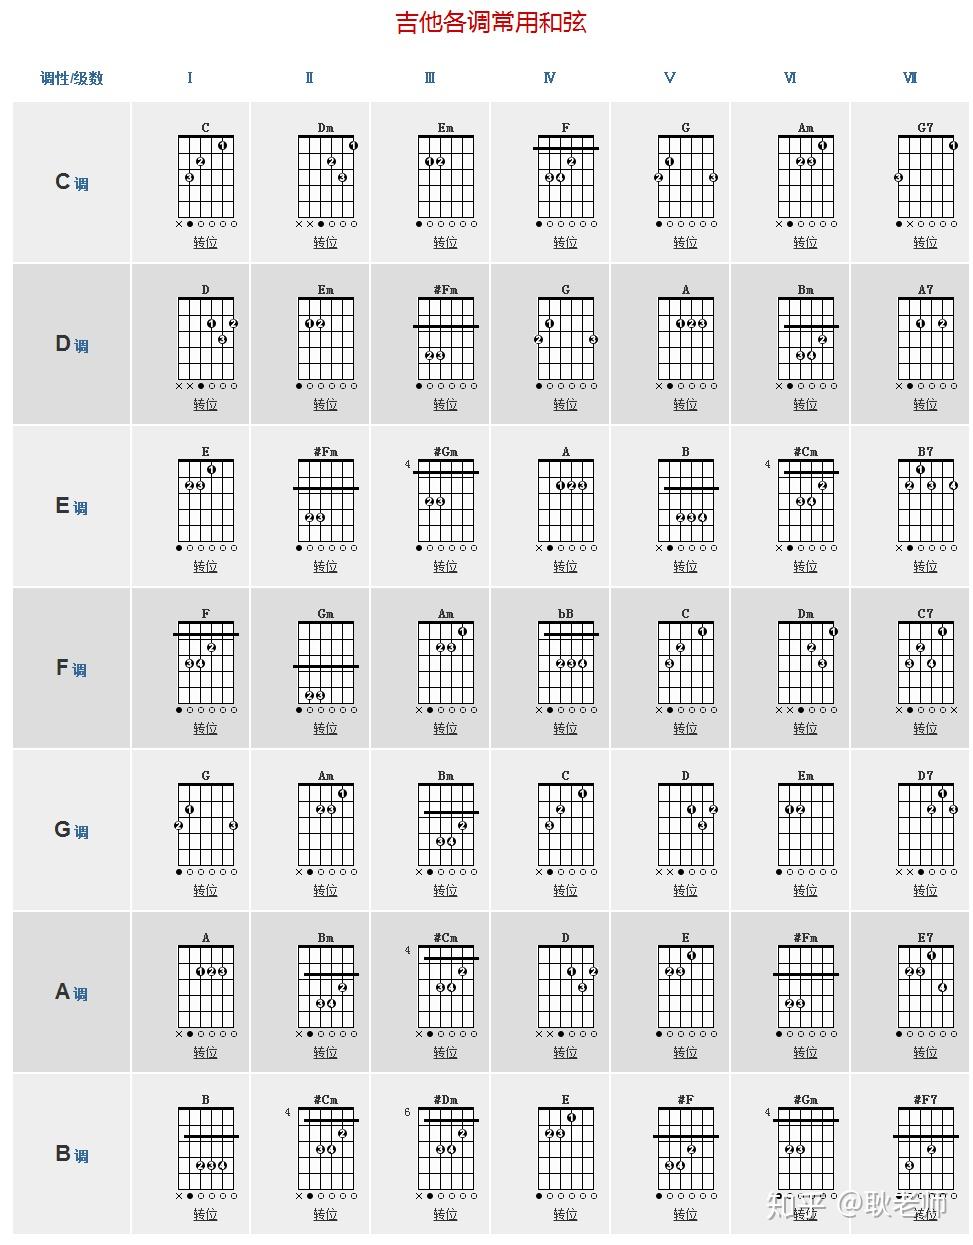 吉他和弦的名称就是由音名而来,常用的和弦如c大调,a大调,g大调,e大调